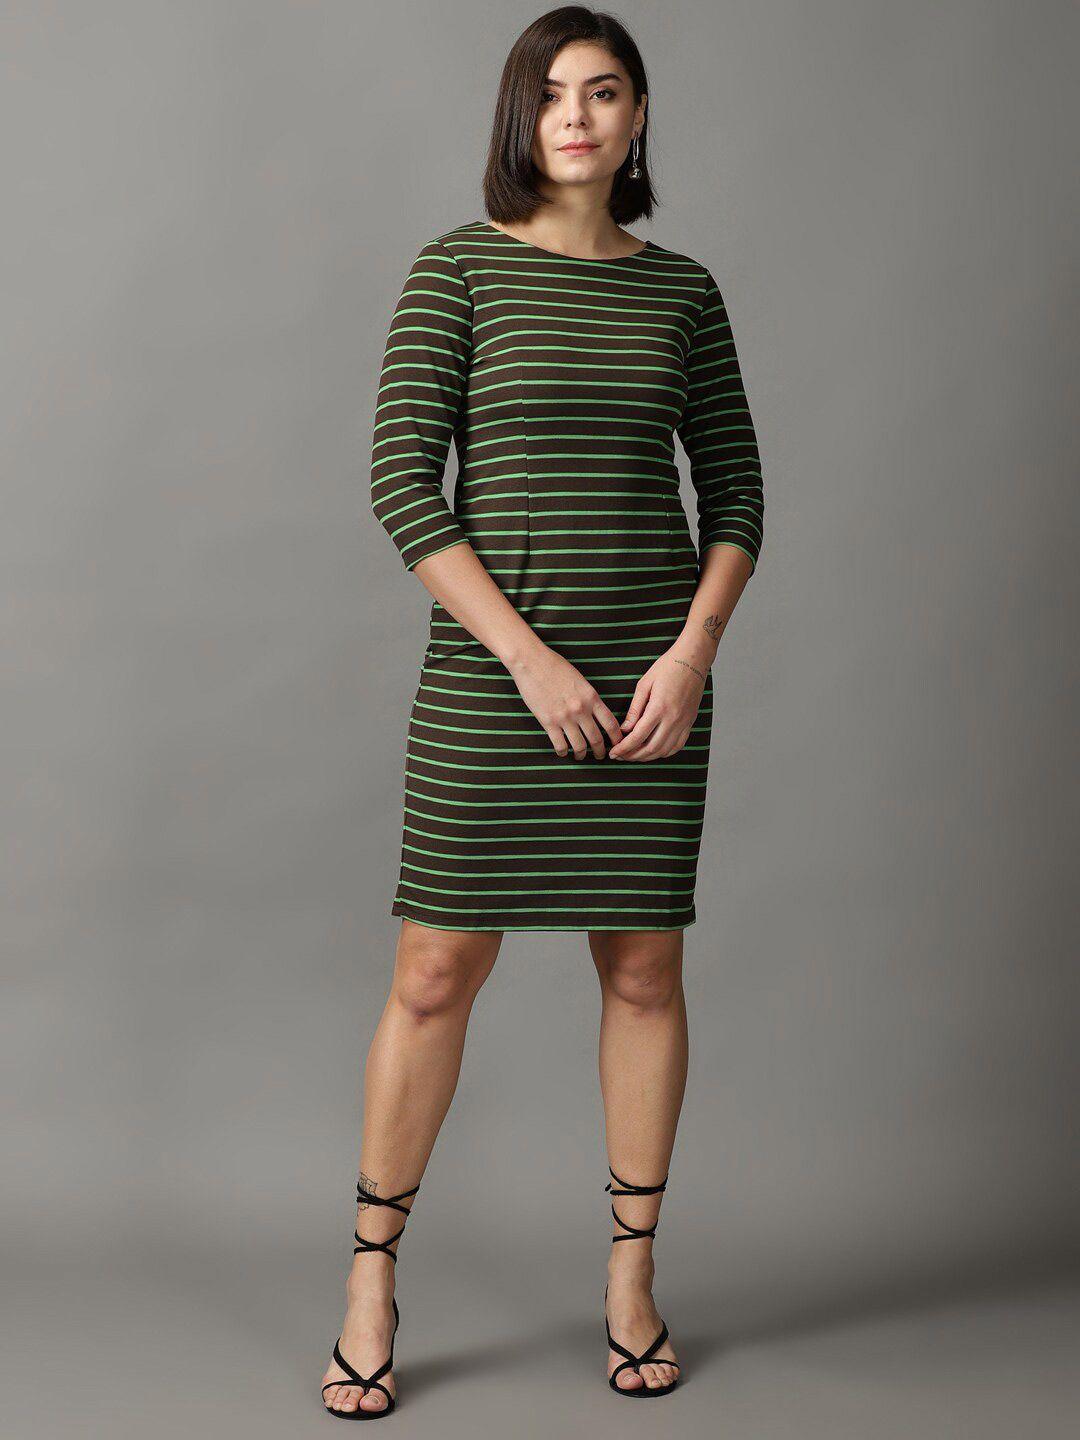 showoff striped acrylic sheath dress